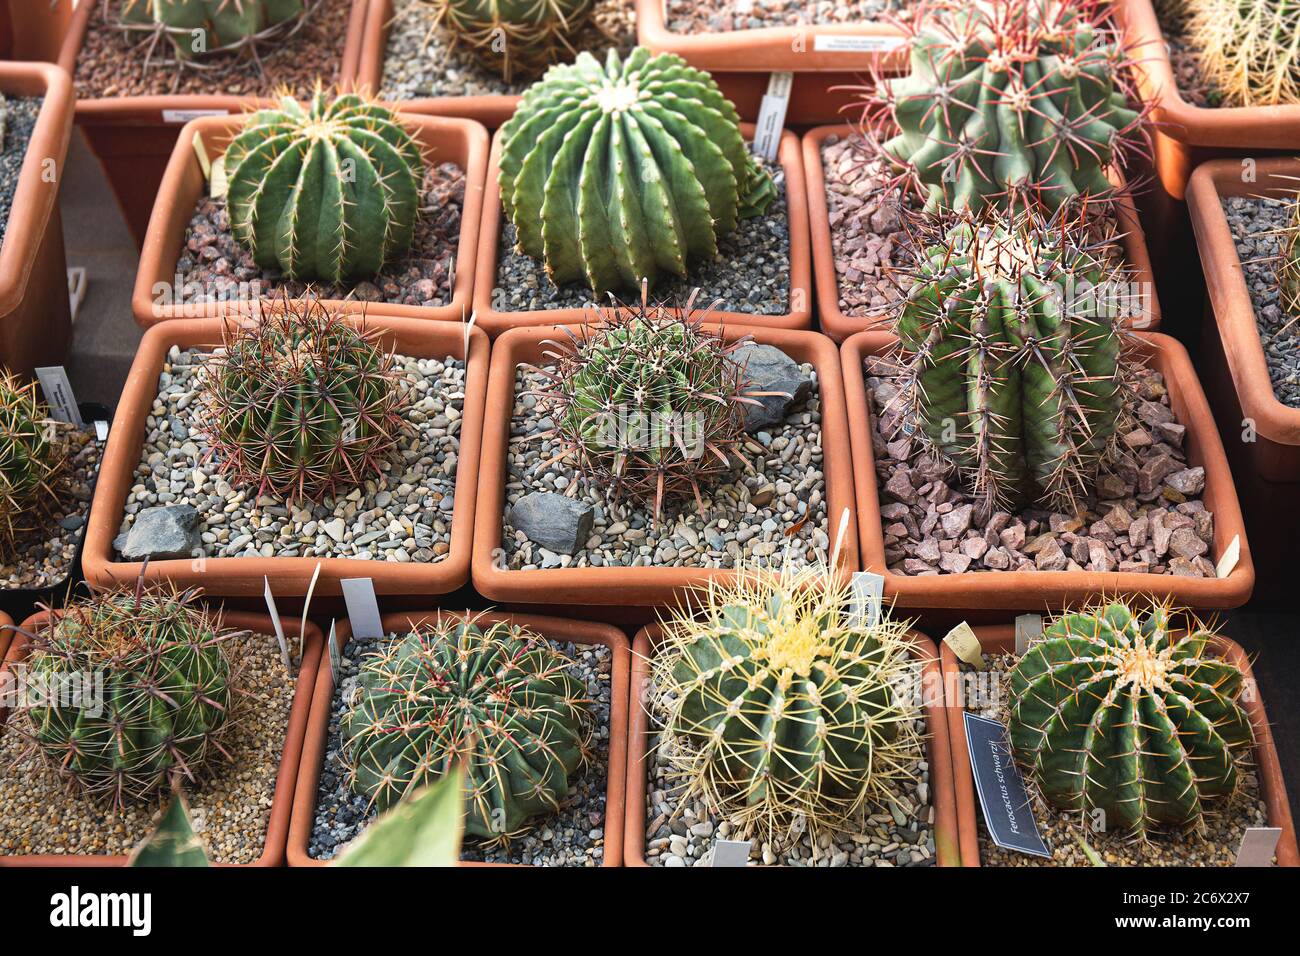 Cactus, plante de dessert en plusieurs types et forme avec elle aiguille comme feuille. Variété de cactus en pot et jardin. Plante succulente, faire pousser la zone sèche Banque D'Images